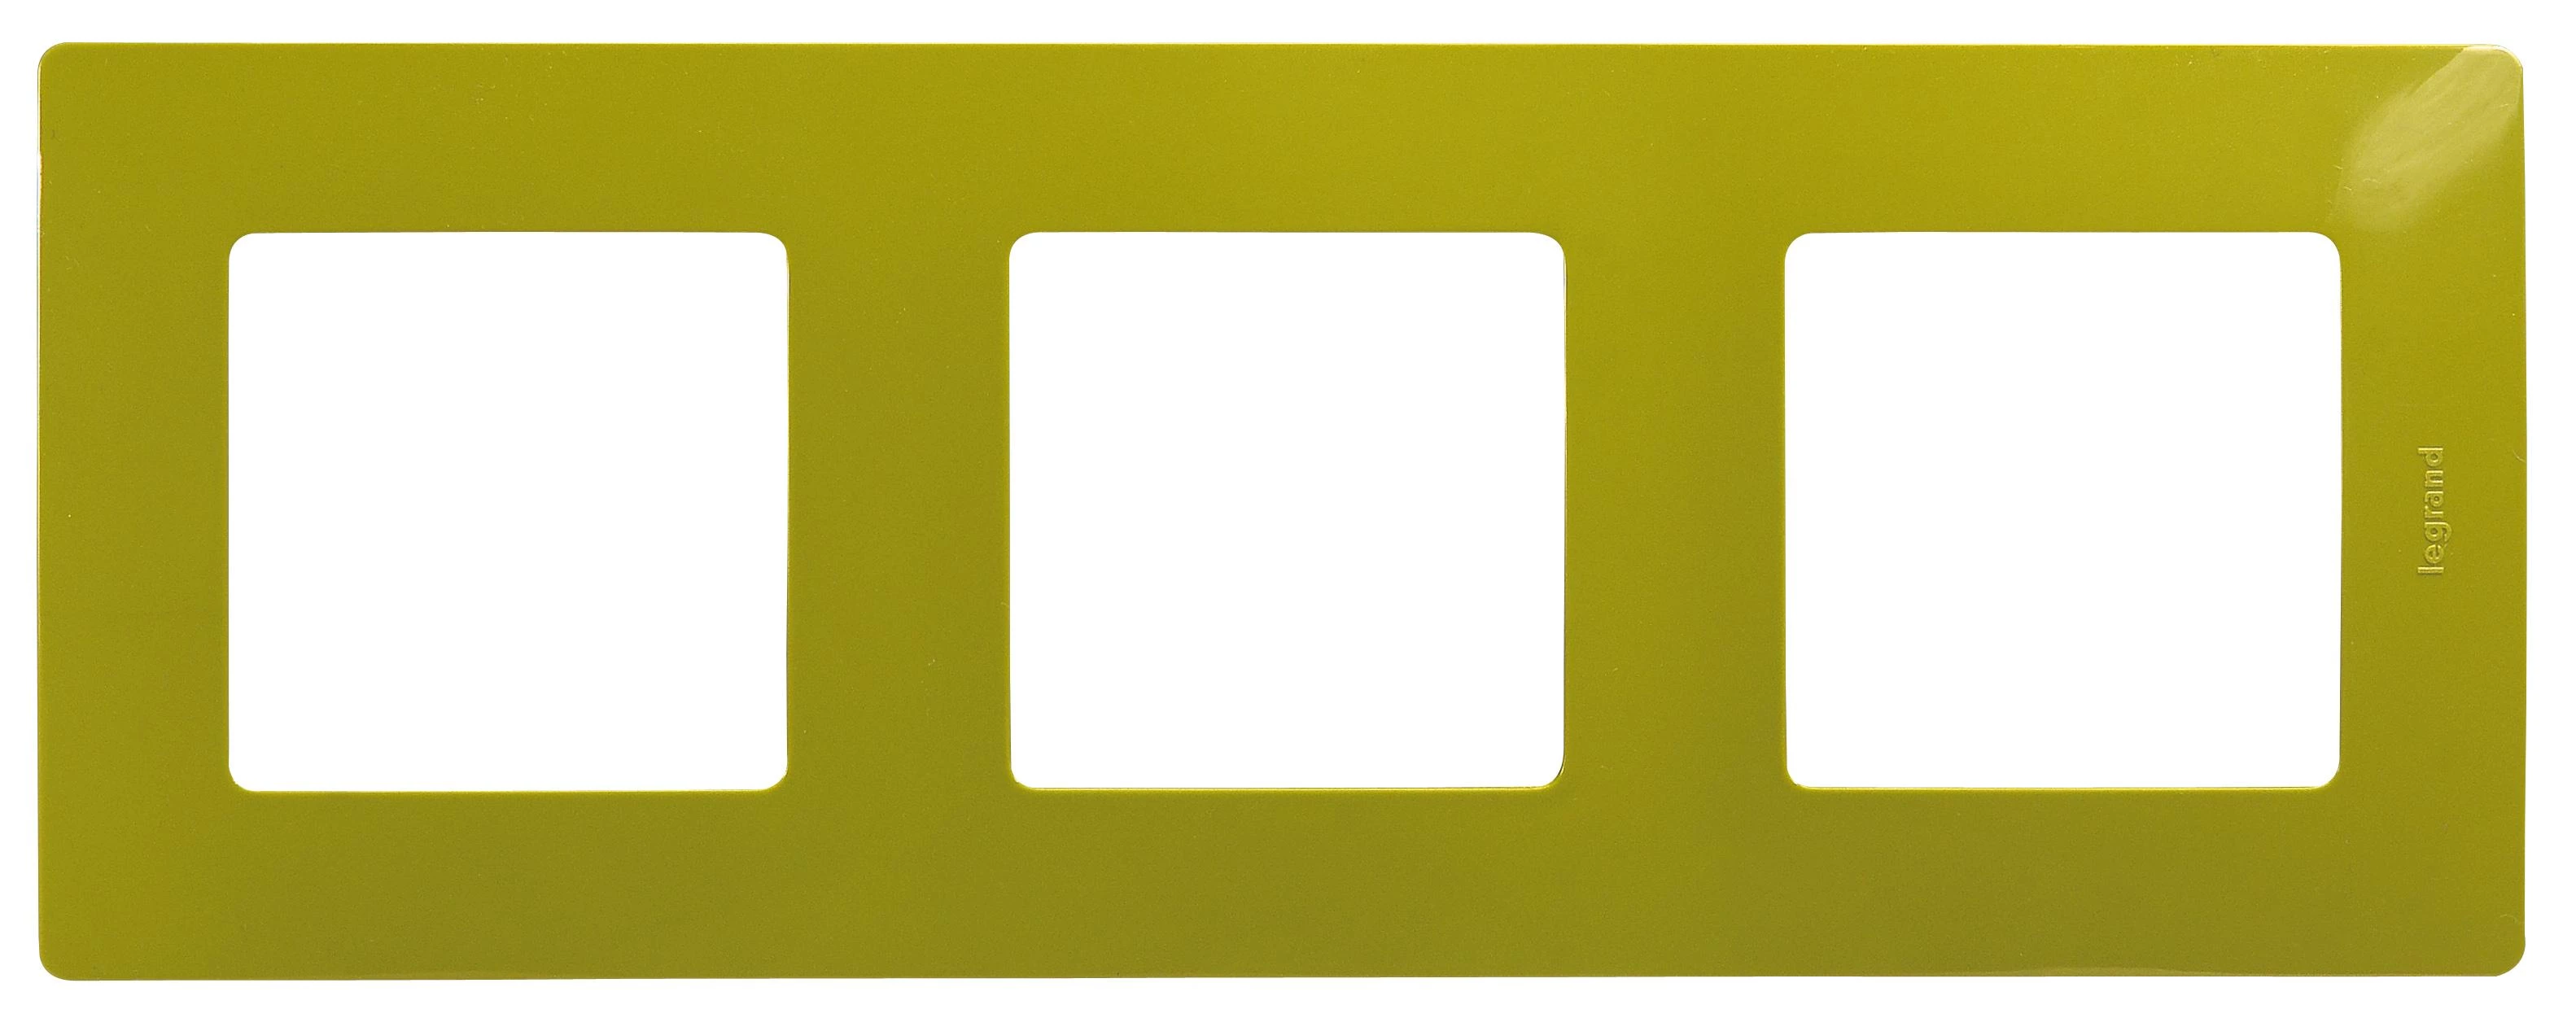  артикул 672543 название Рамка 3-ая (тройная), цвет Зеленый папоротник, Etika